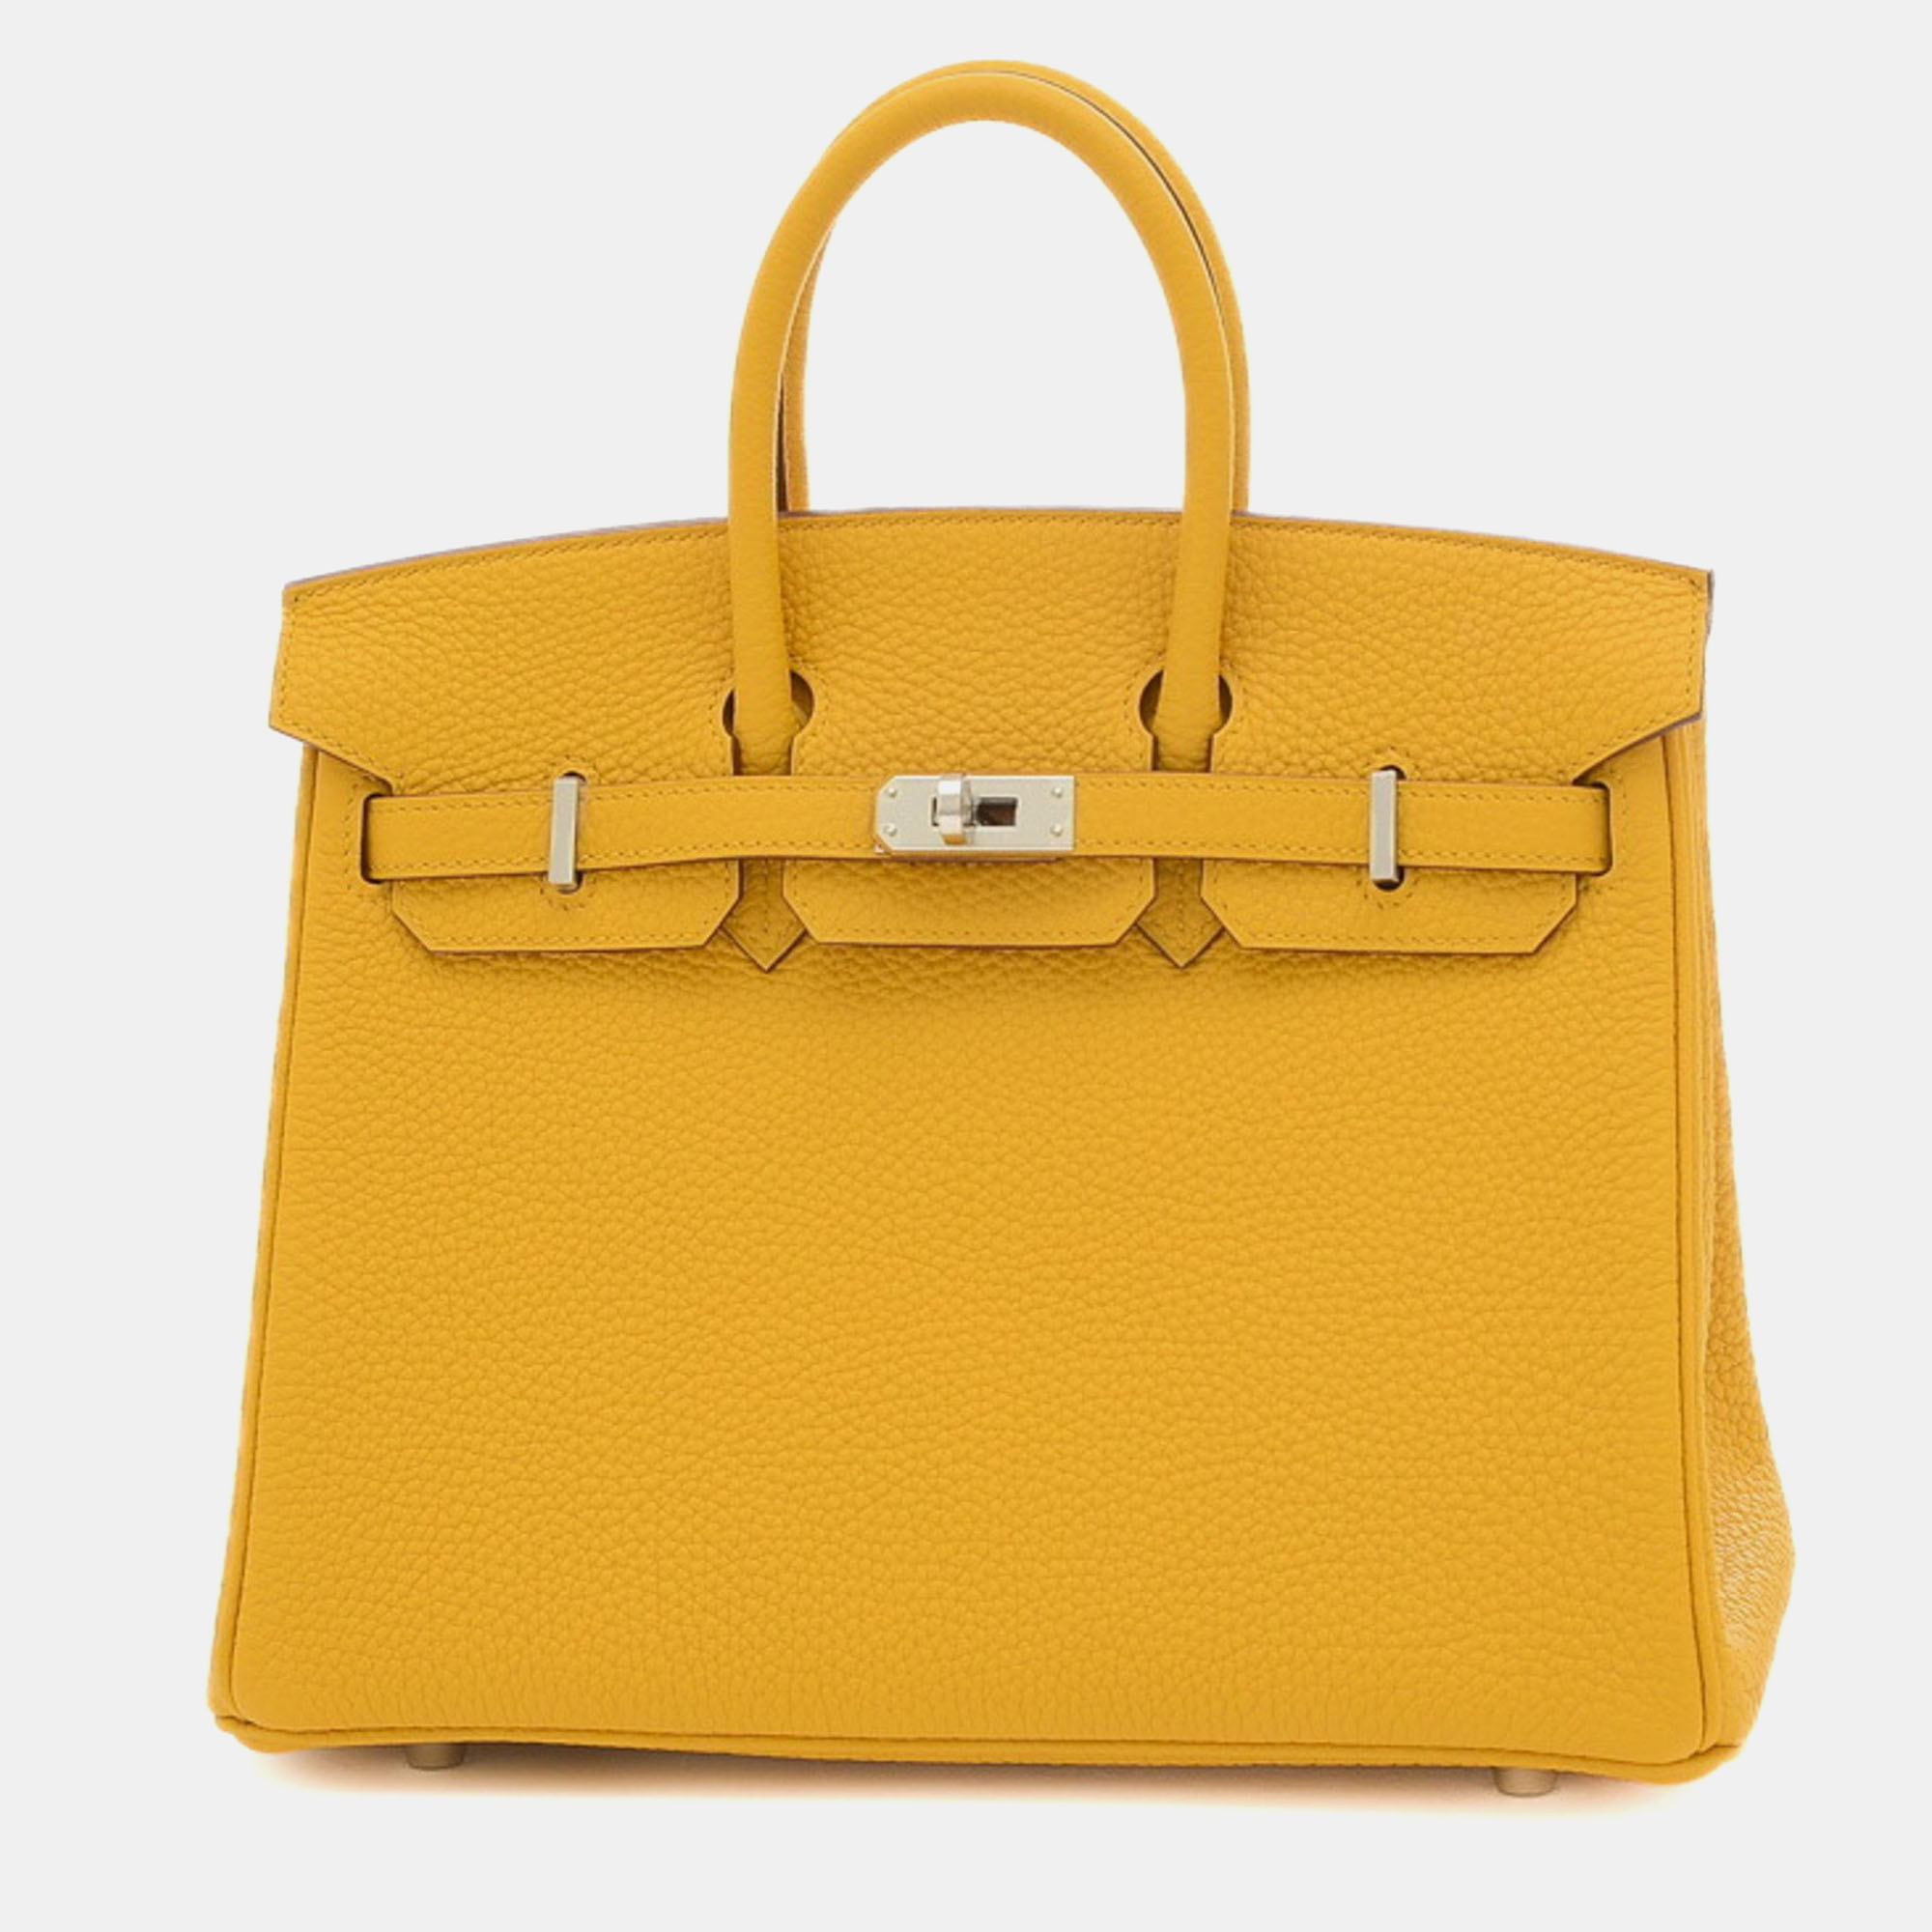 Hermes jaune ambre togo b stamp birkin 25 handbag